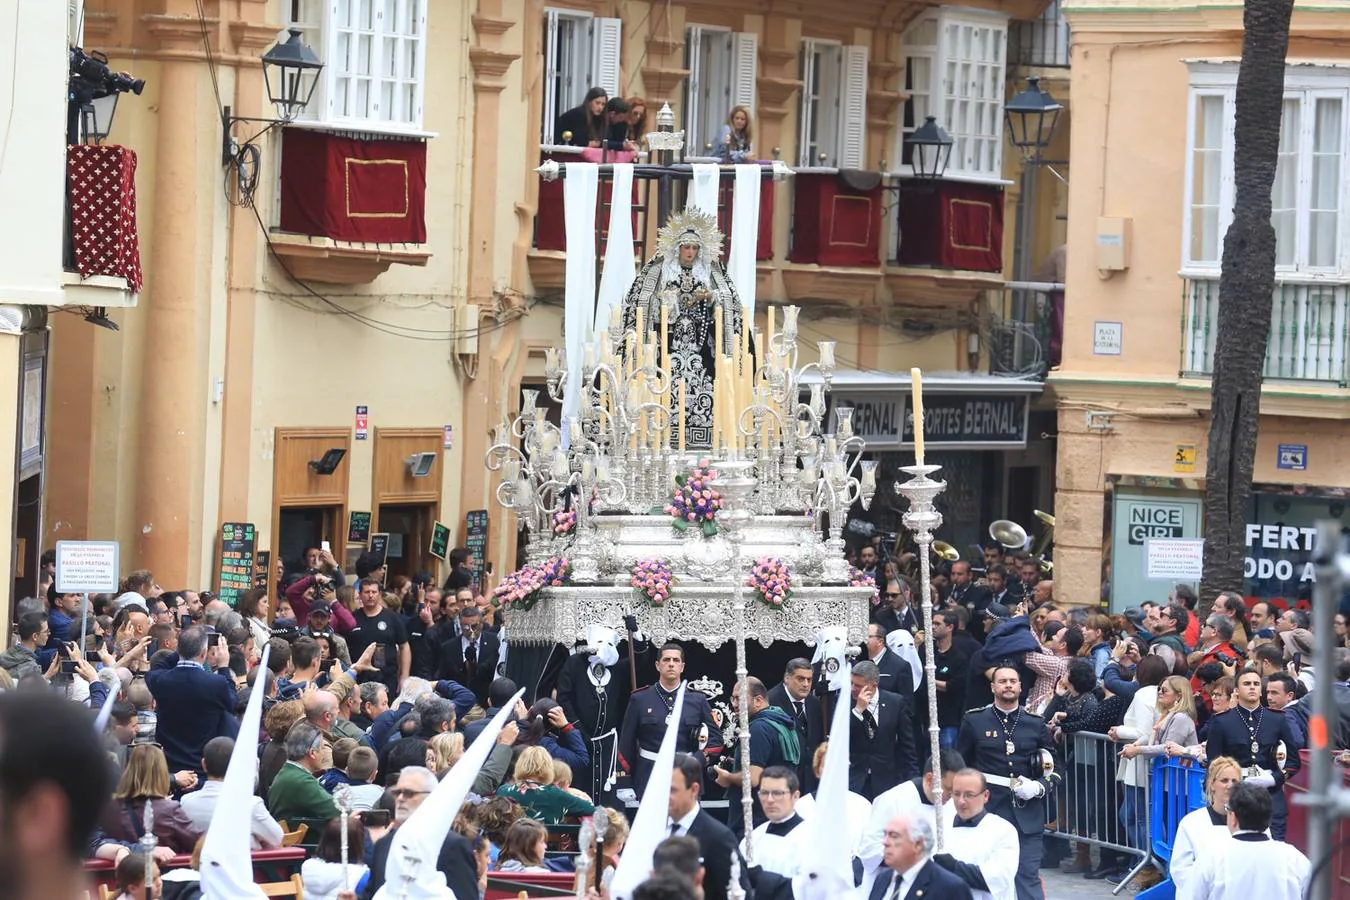 FOTOS: Santo Entierro en la Semana Santa de Cádiz 2019